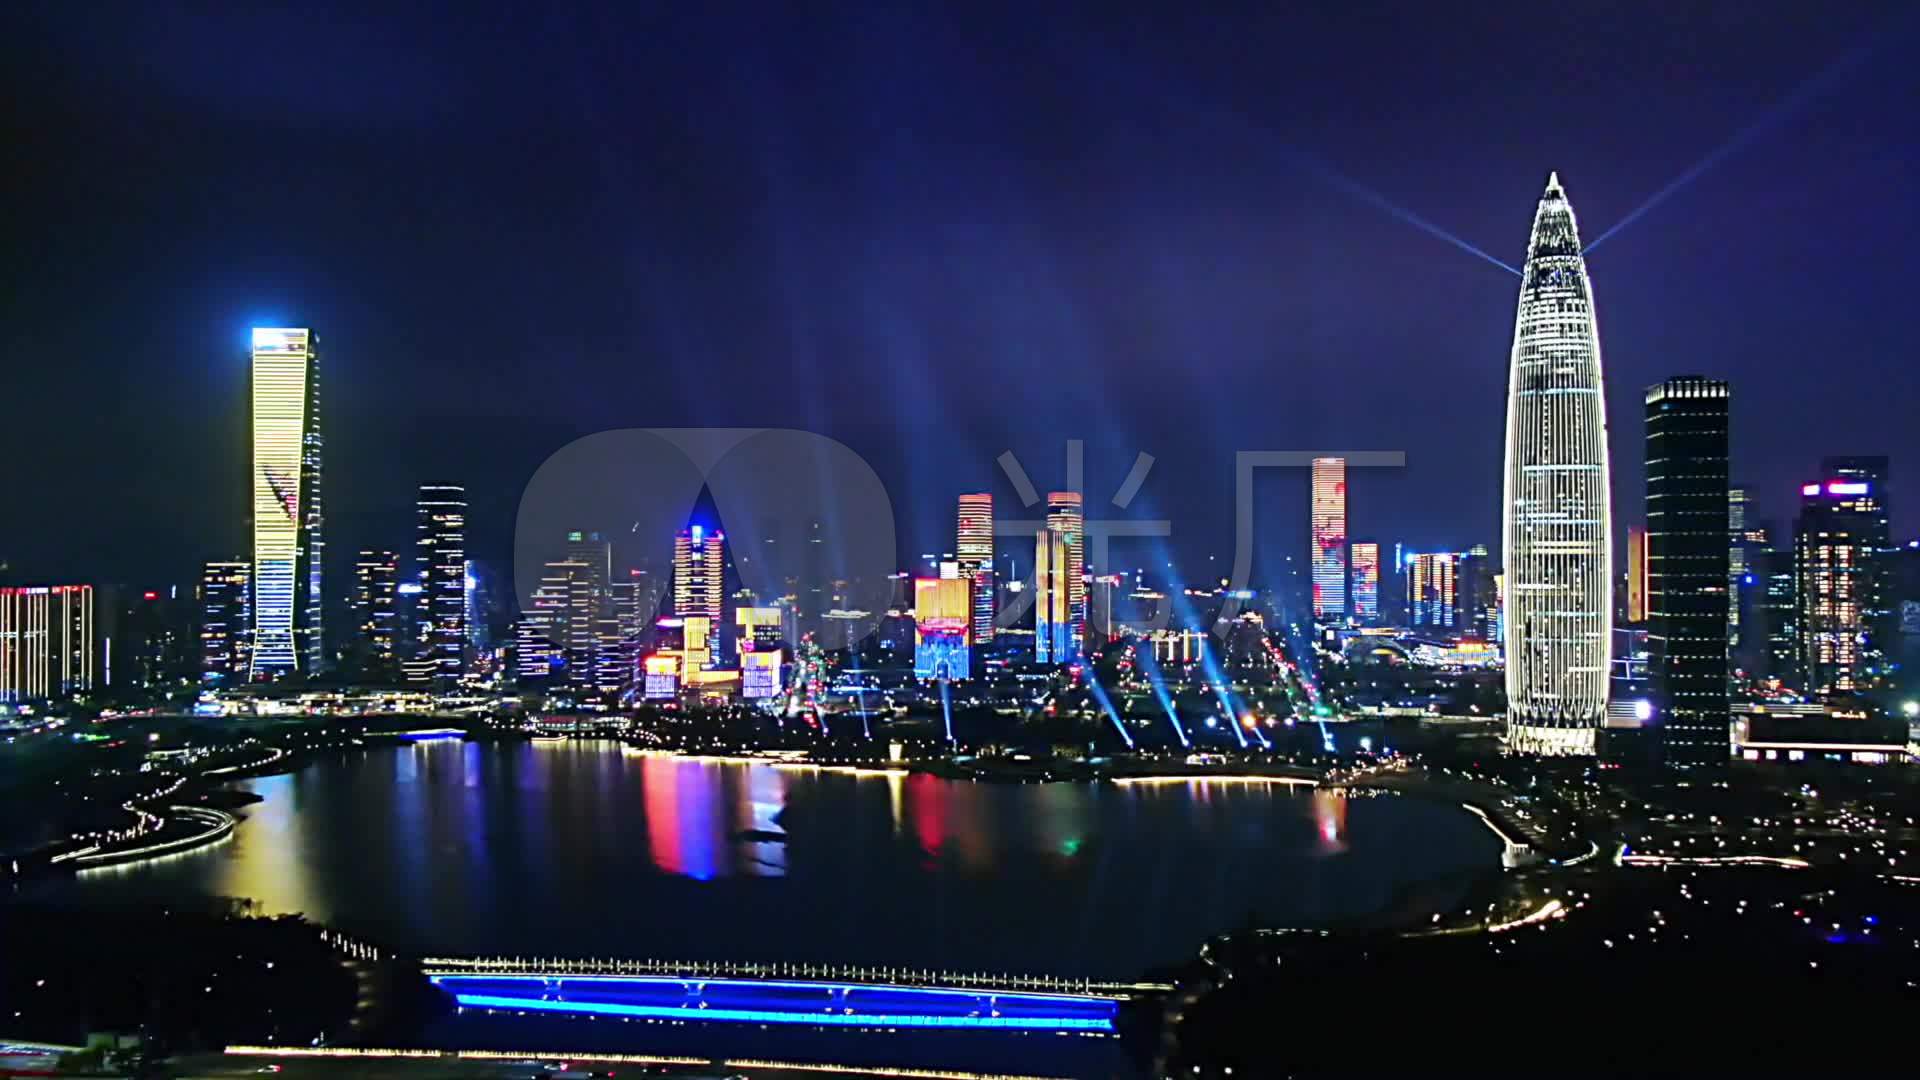 深圳市民中心灯光秀-中关村在线摄影论坛